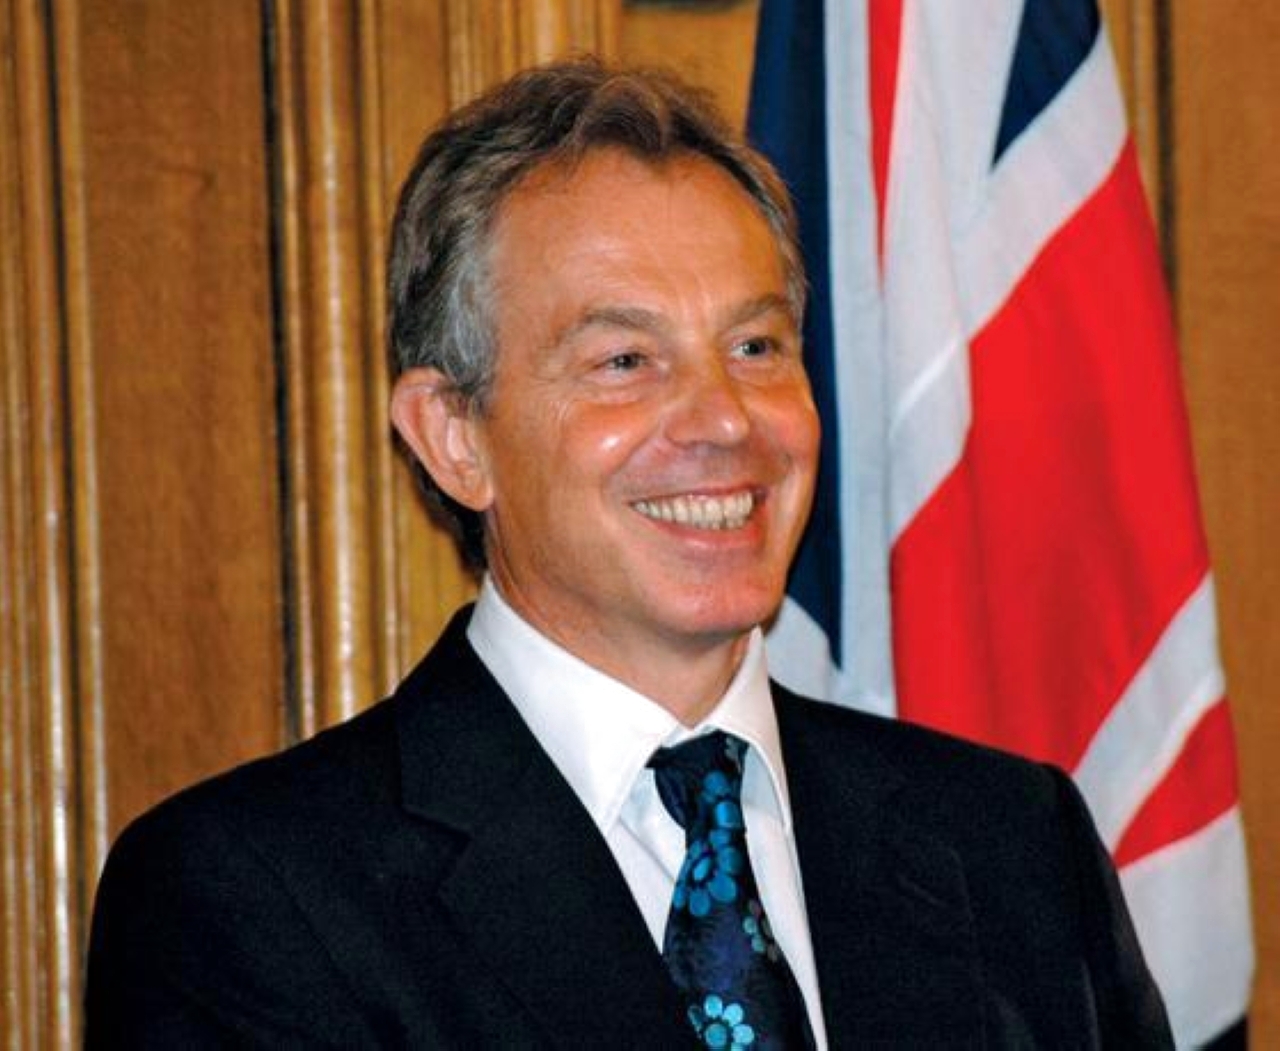 الصورة : 2007 رئيس الوزراء البريطاني توني بلير يستقيل من منصبه وجوردون براون يخلفه.